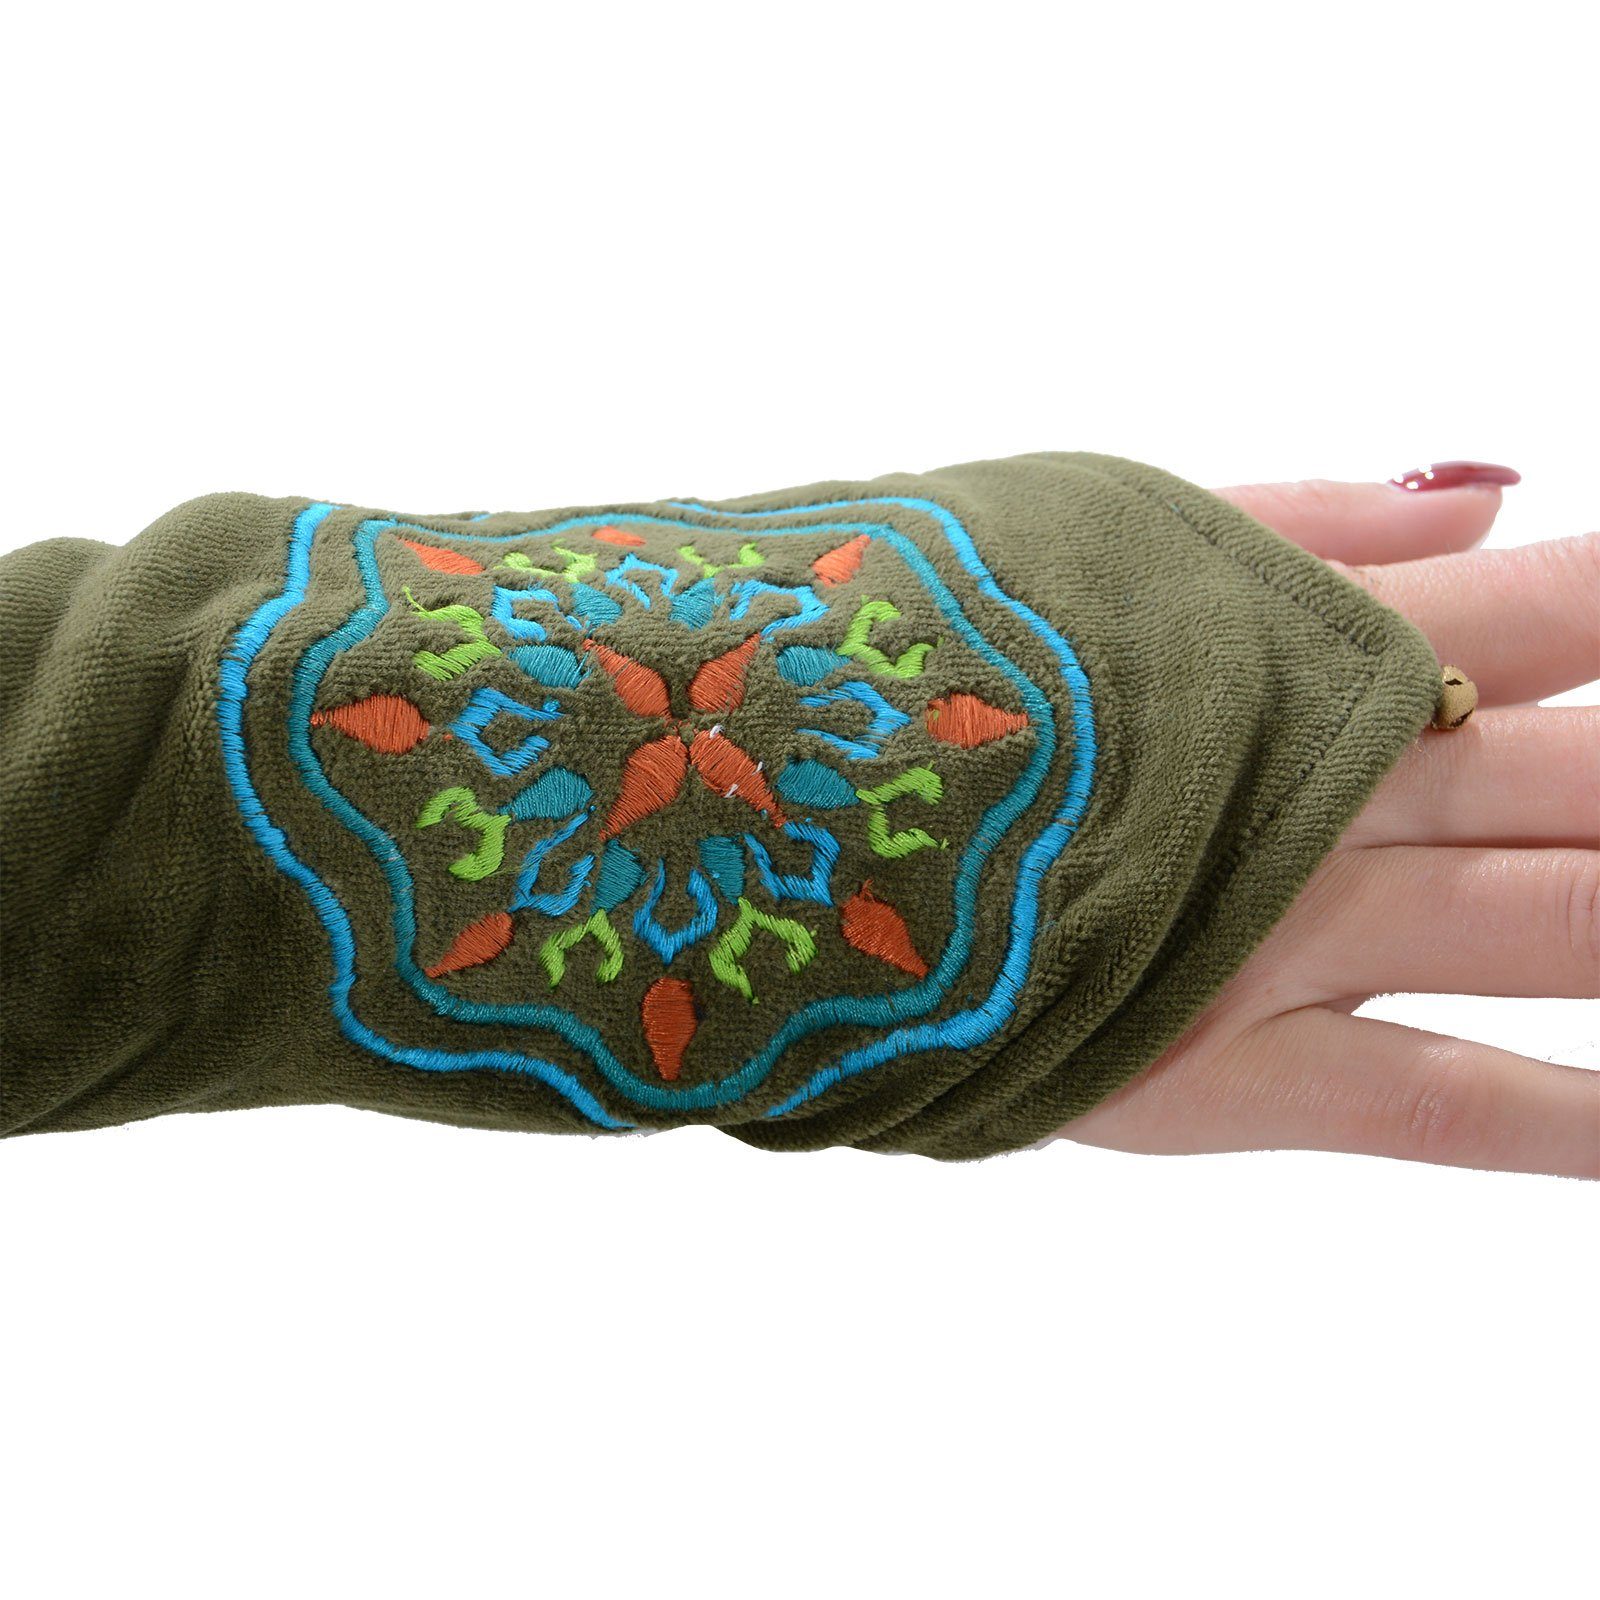 Armstulpen Muster" KUNST Armstulpen Handwärmer MAGIE Samt Stulpen Boho Grün "Mandala UND Handschuhe